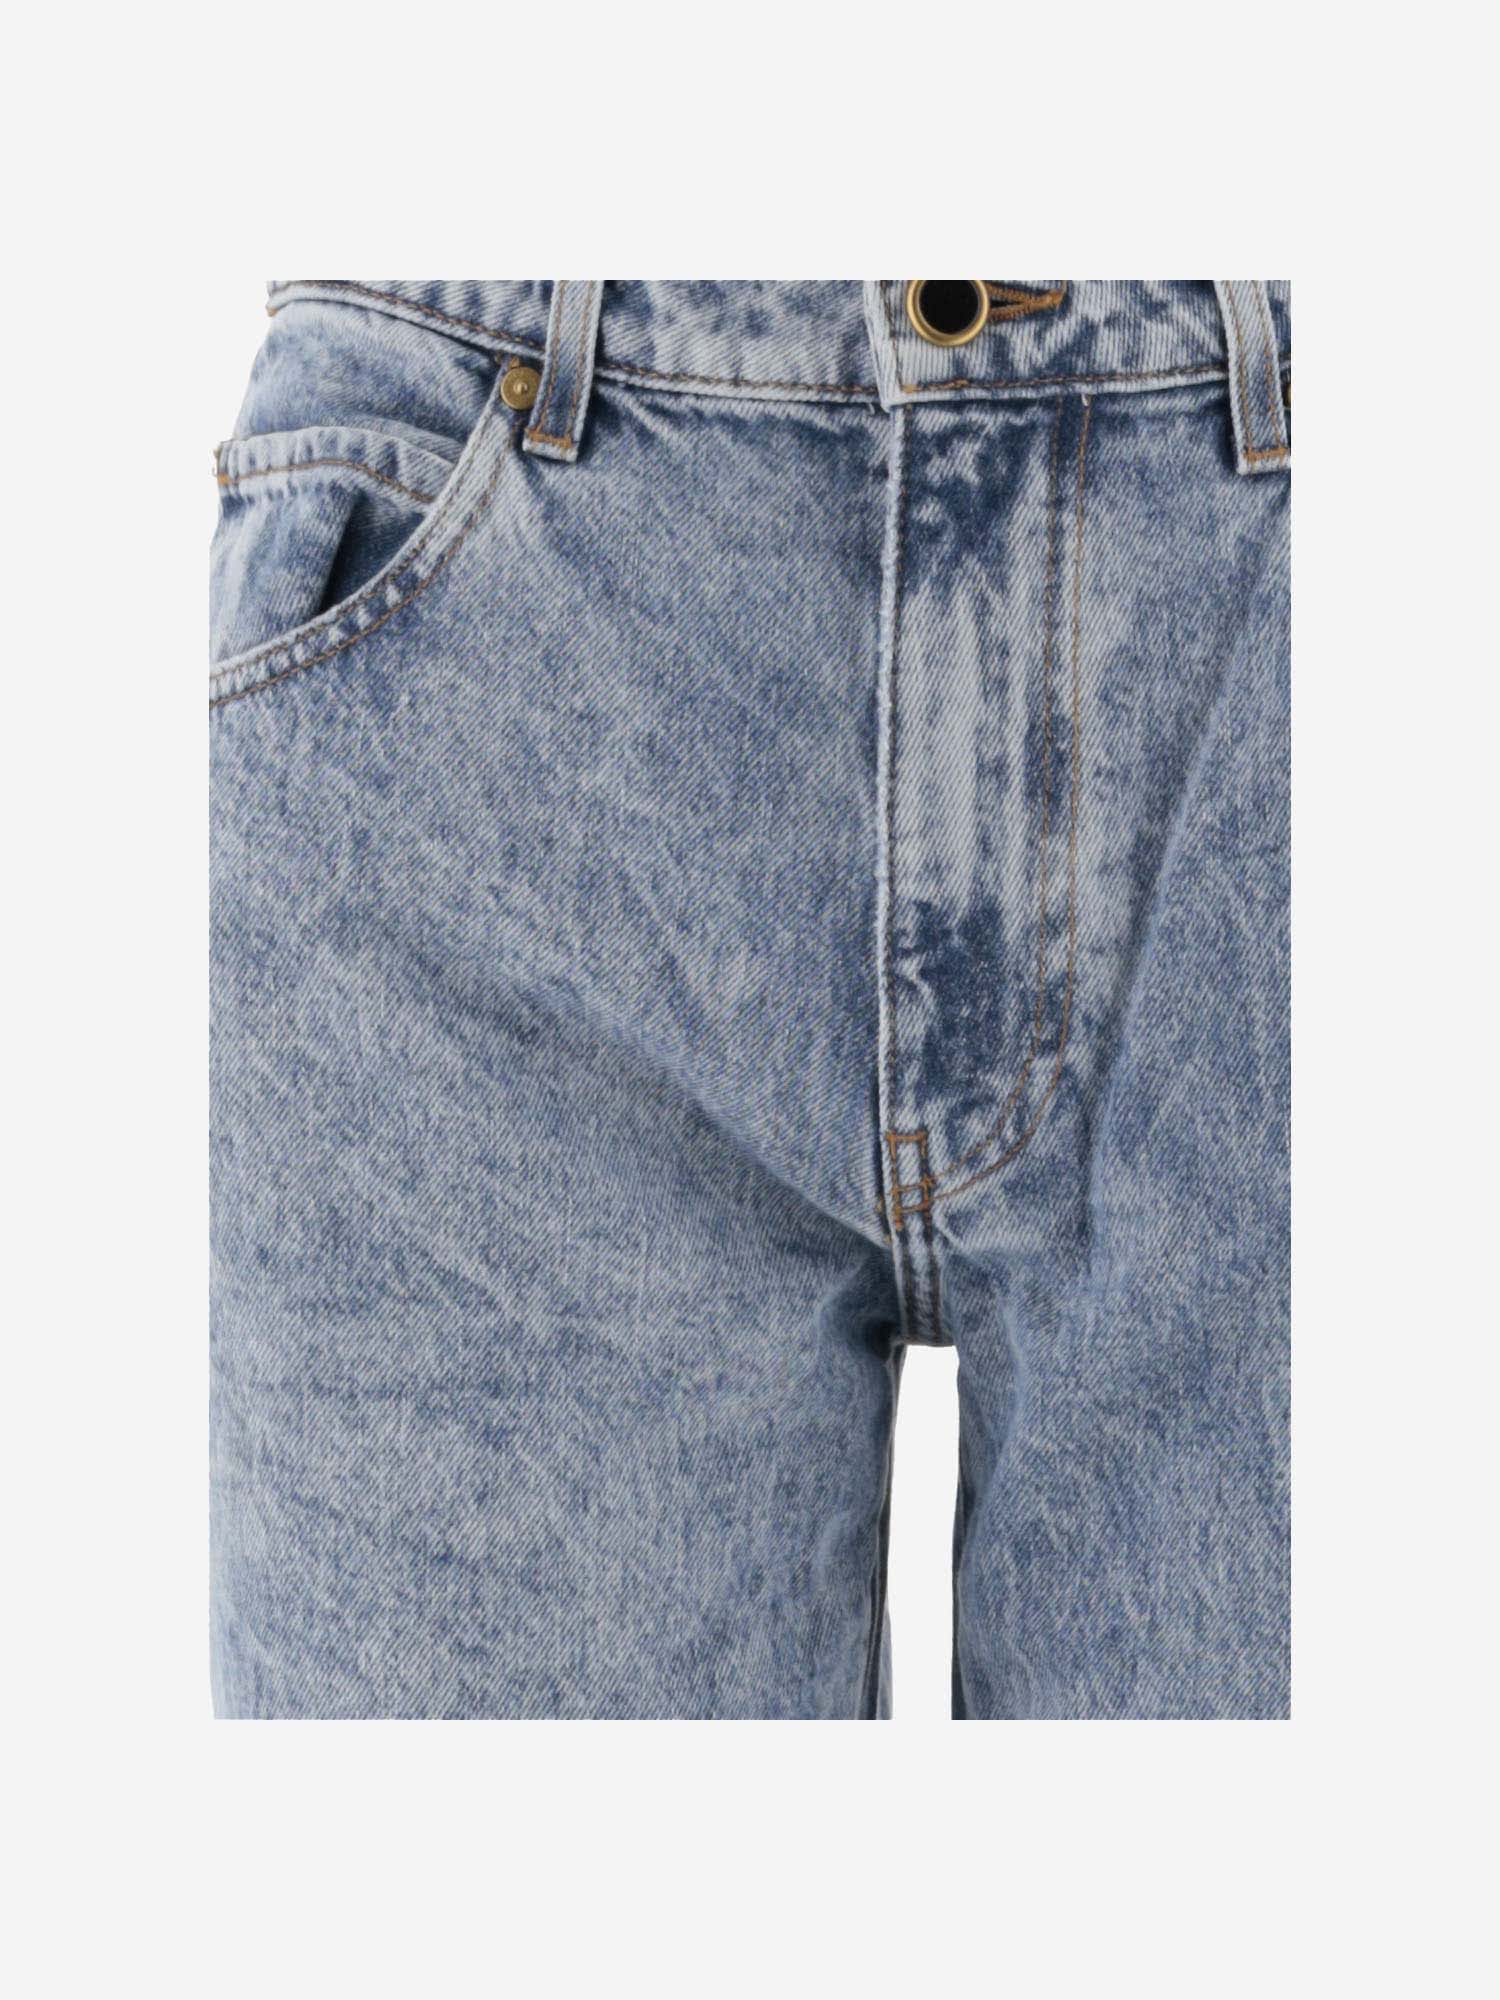 Shop Khaite Cotton Denim Jeans In Bryce